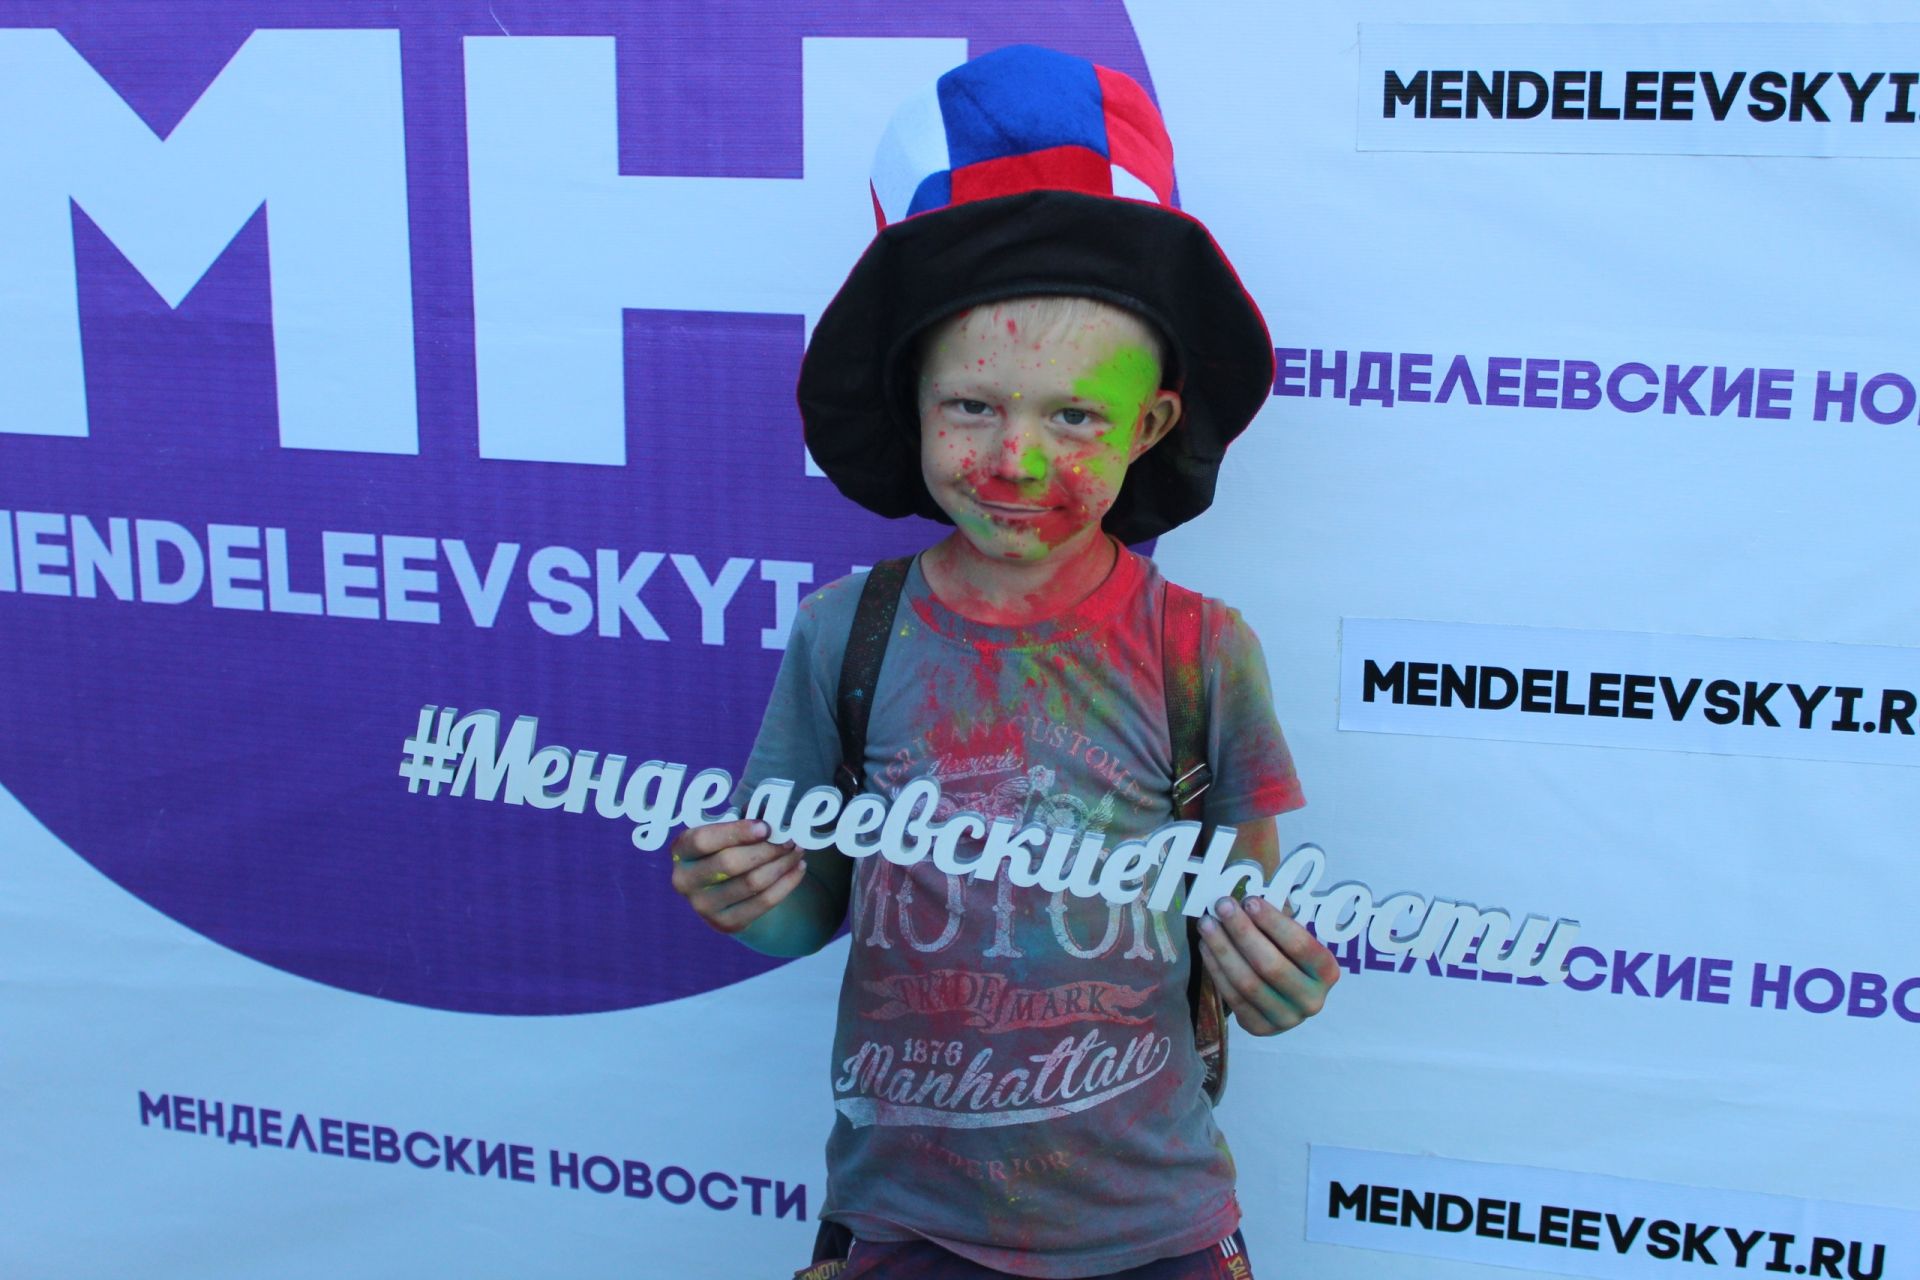 В Менделеевске на Дне молодежи работала фан - зона для болельщиков футбола